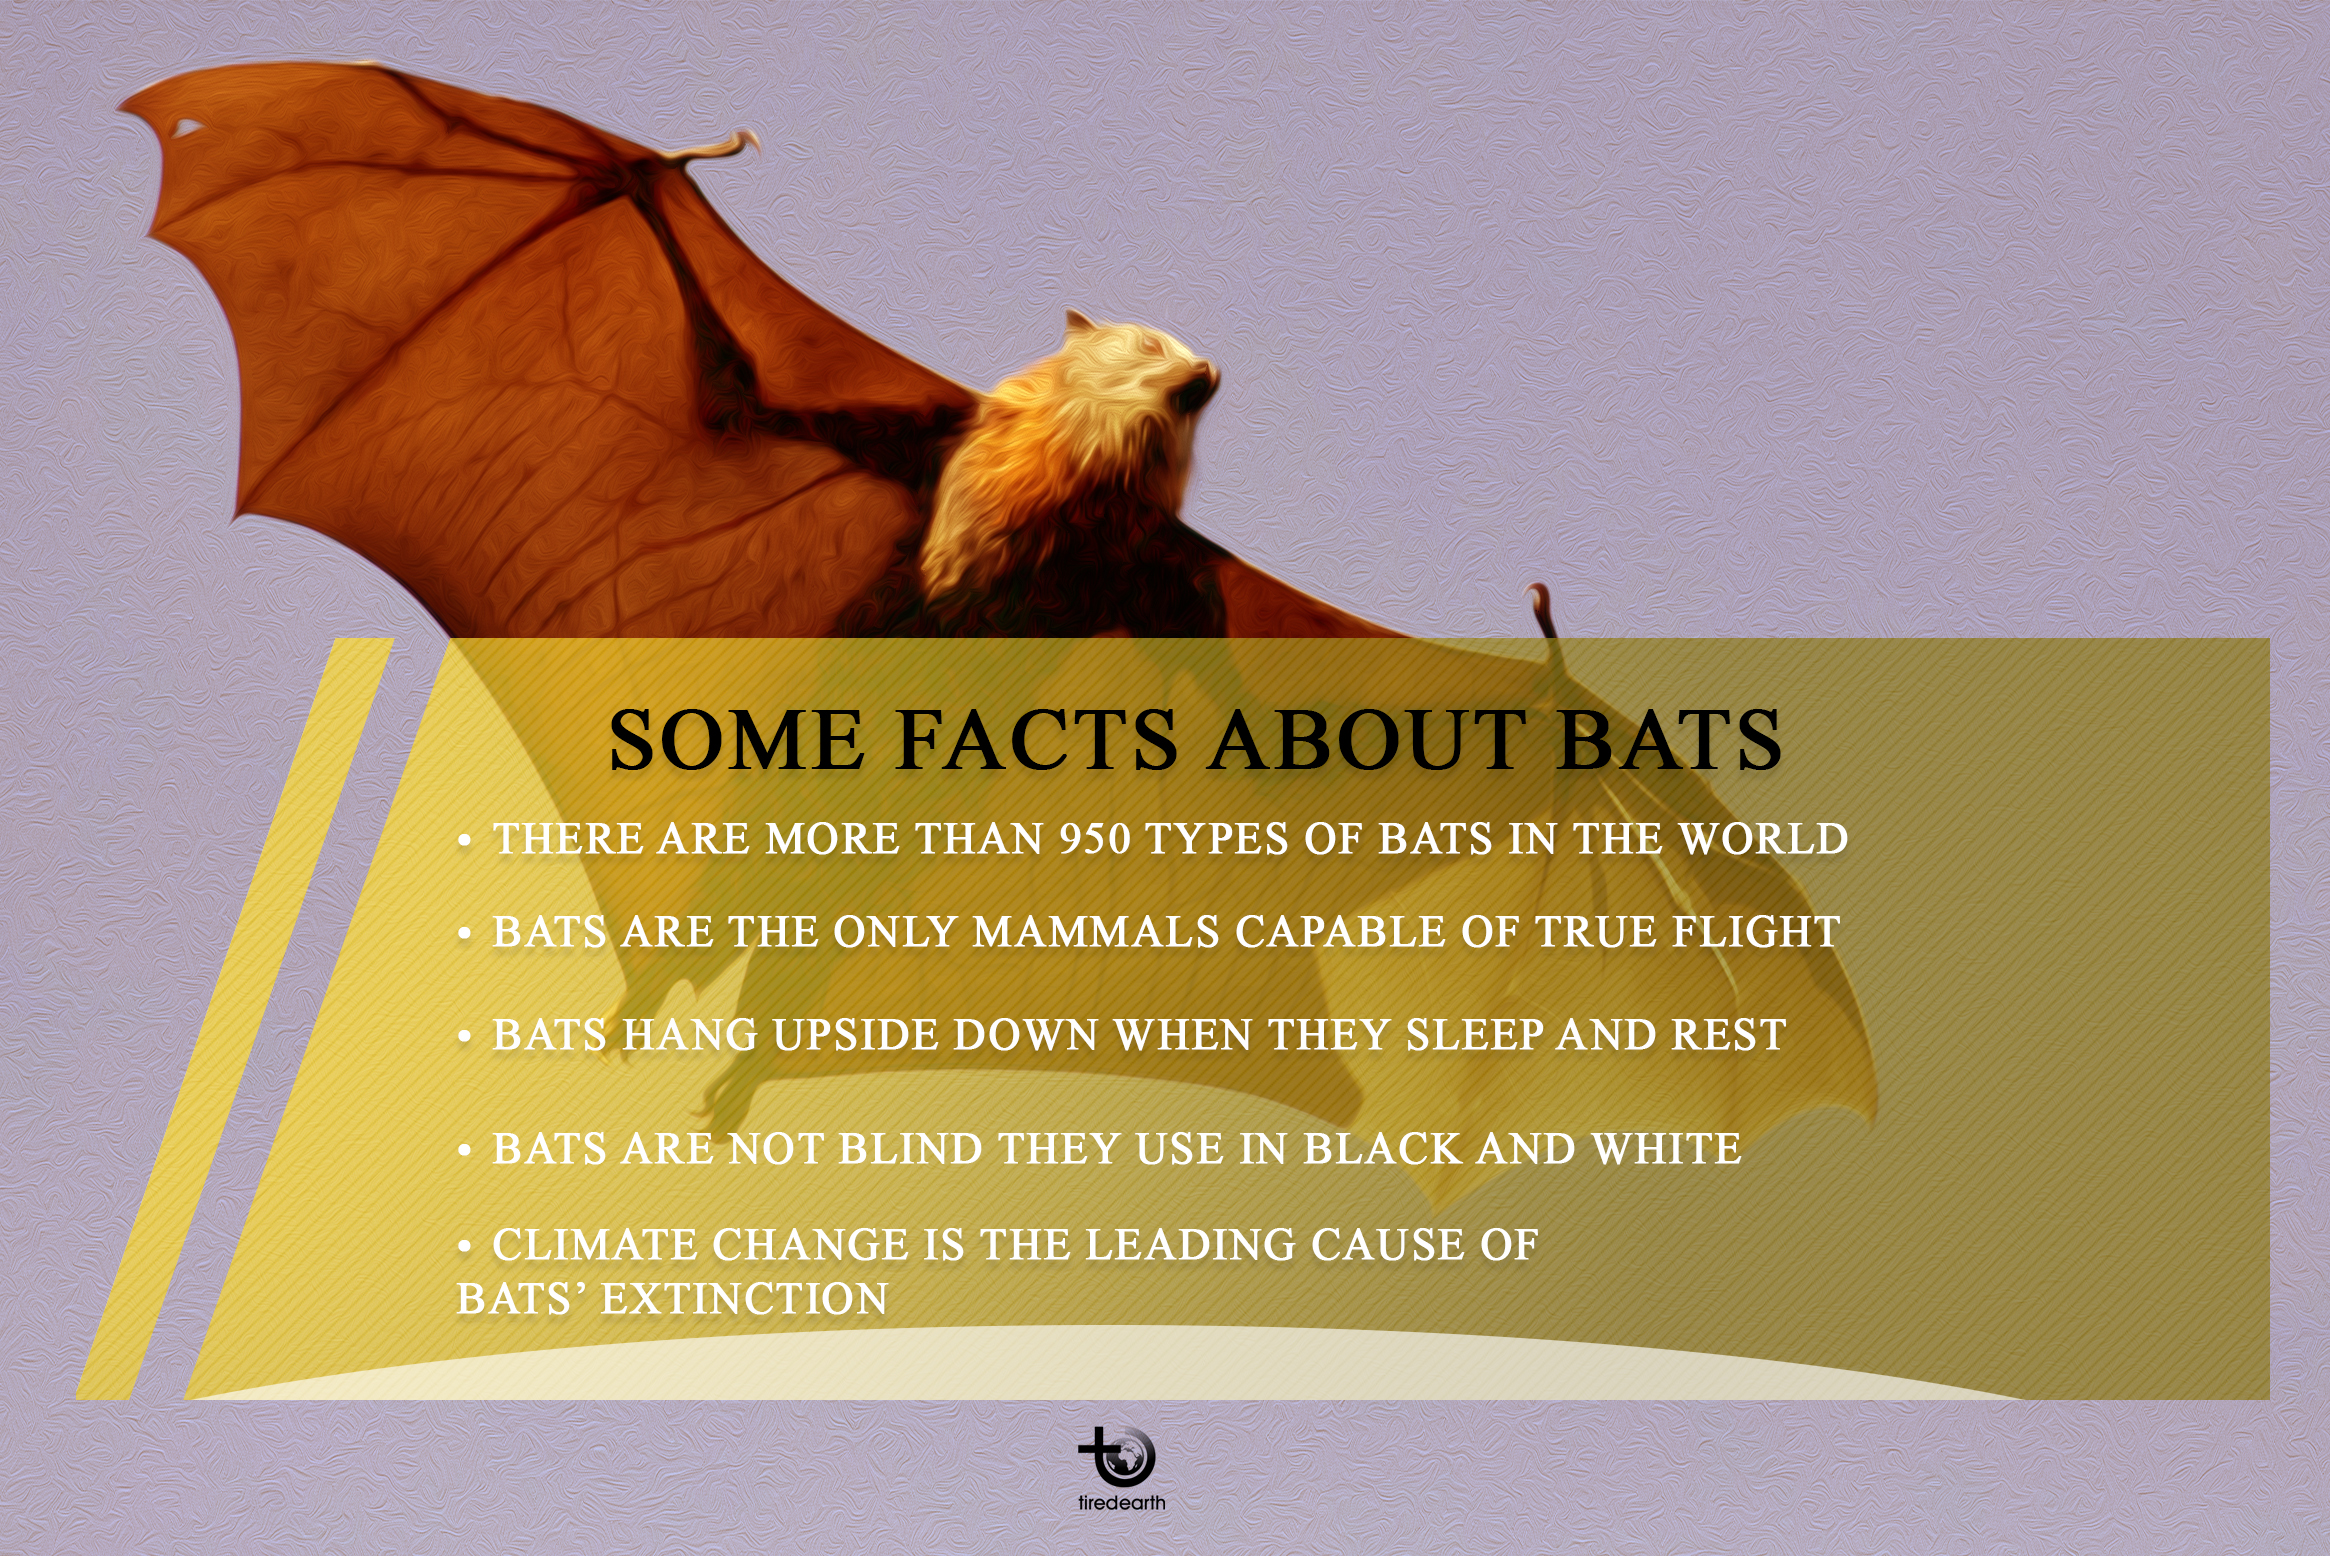 Why Should We Appreciate Bats?